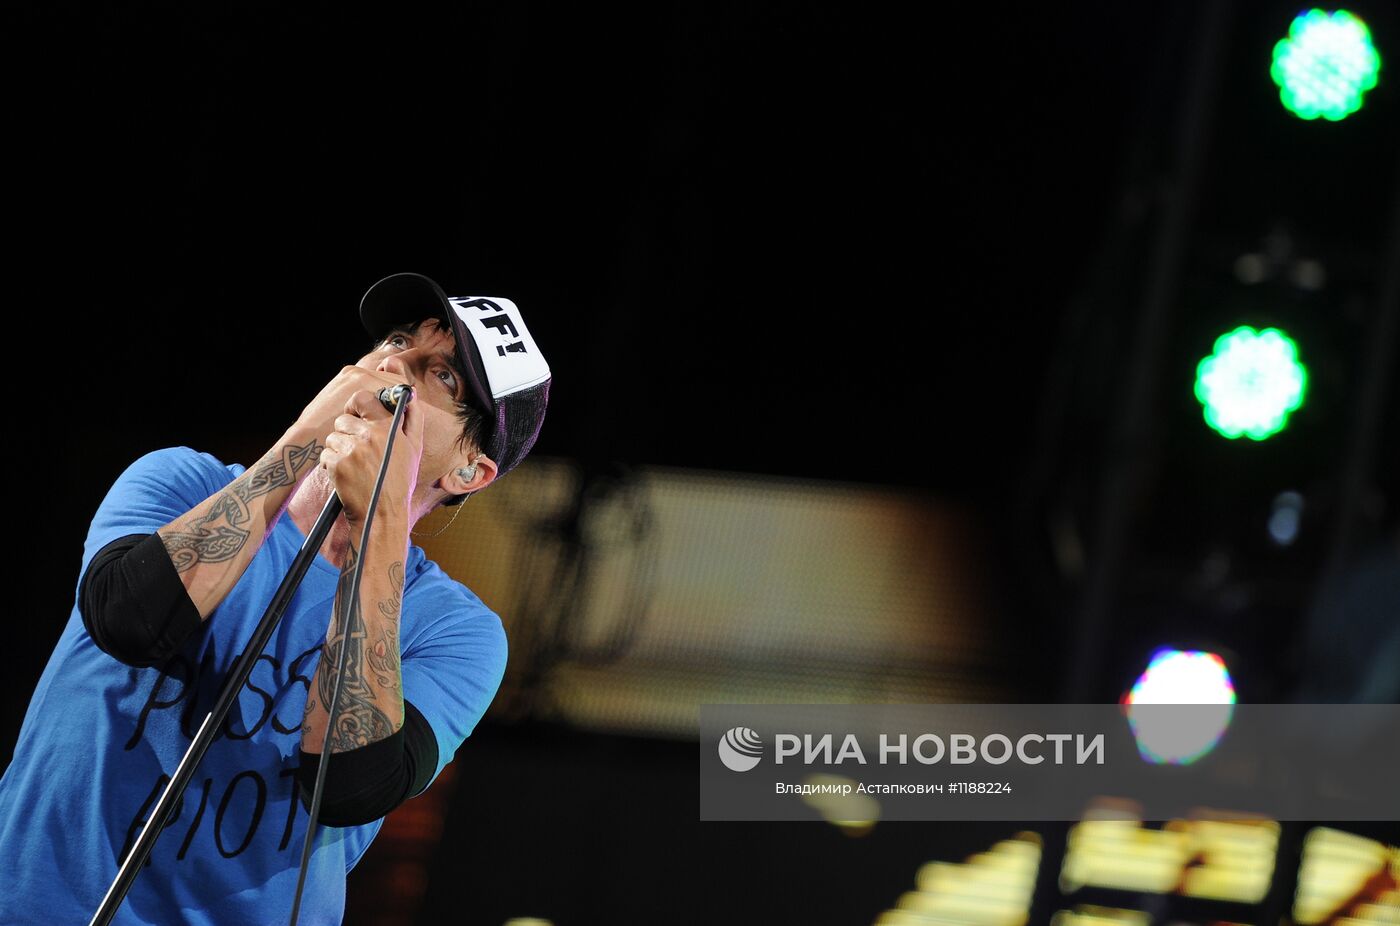 Концерт Red Hot Chili Peppers в Москве